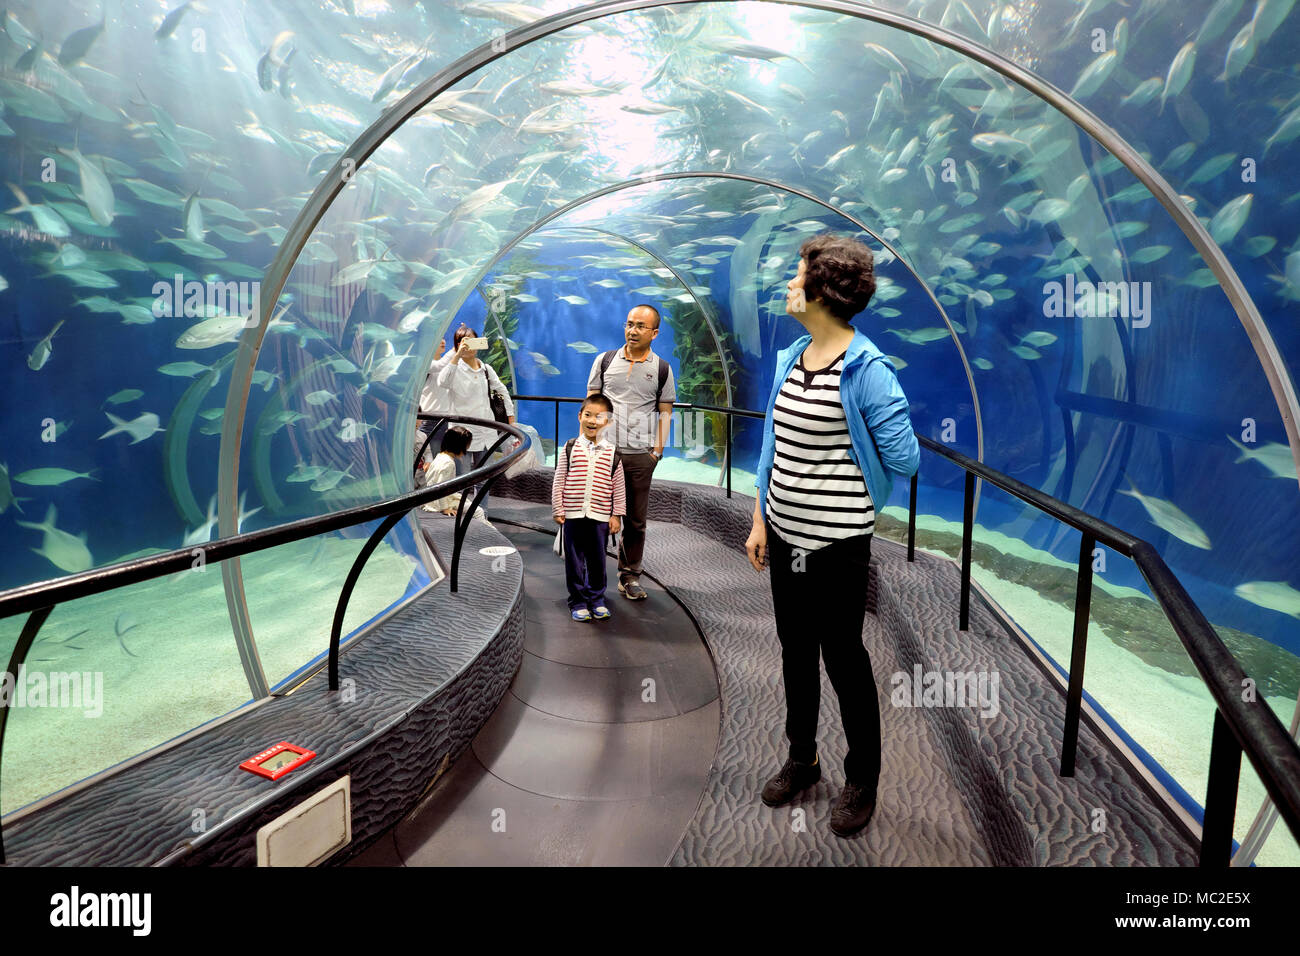 Family enjoying Shanghai Ocean Aquarium - déménagement dans un tunnel sur une courroie de convoyeur (à gauche), Shanghai, Chine Banque D'Images